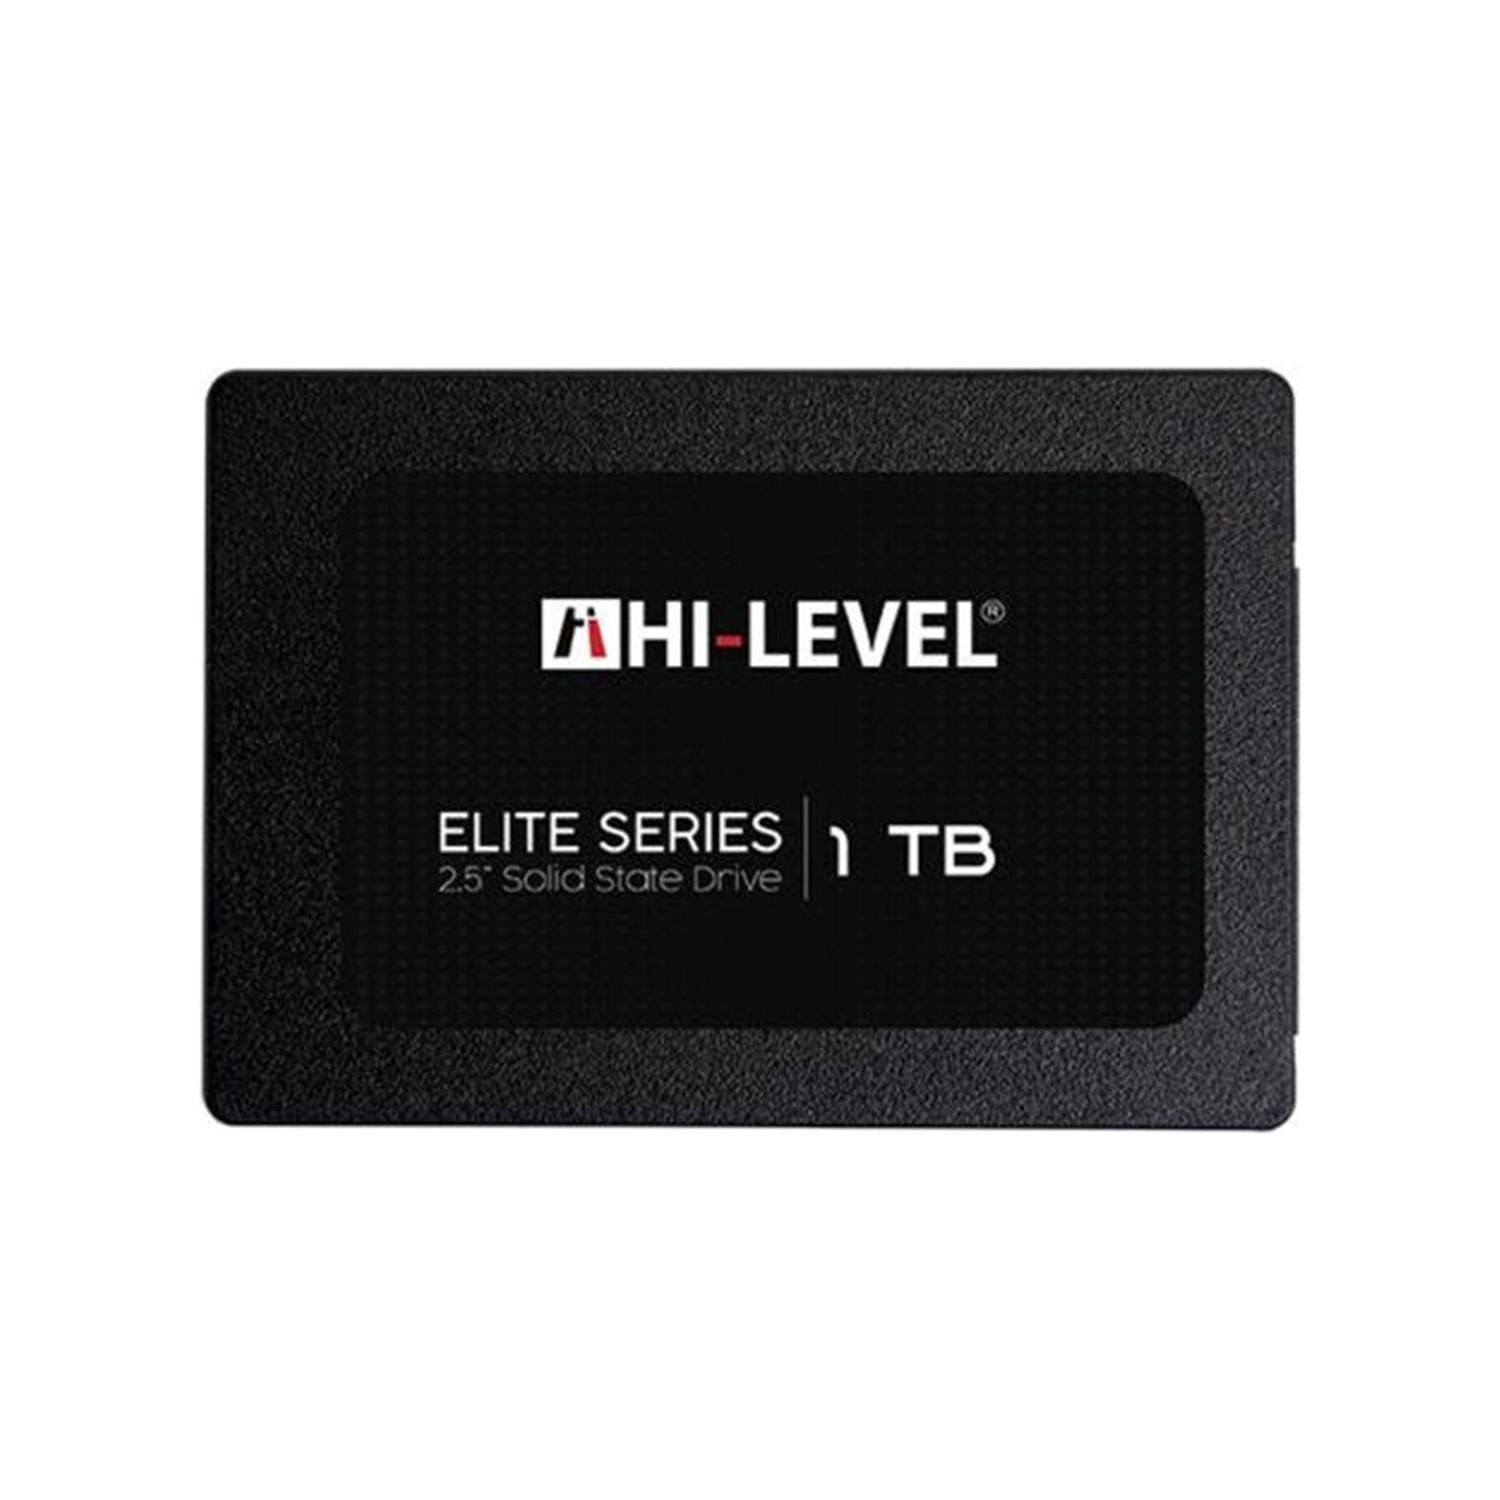 Hi-Level Elite 2.5' 1Tb 560-540 Sata3 Ssd Disk